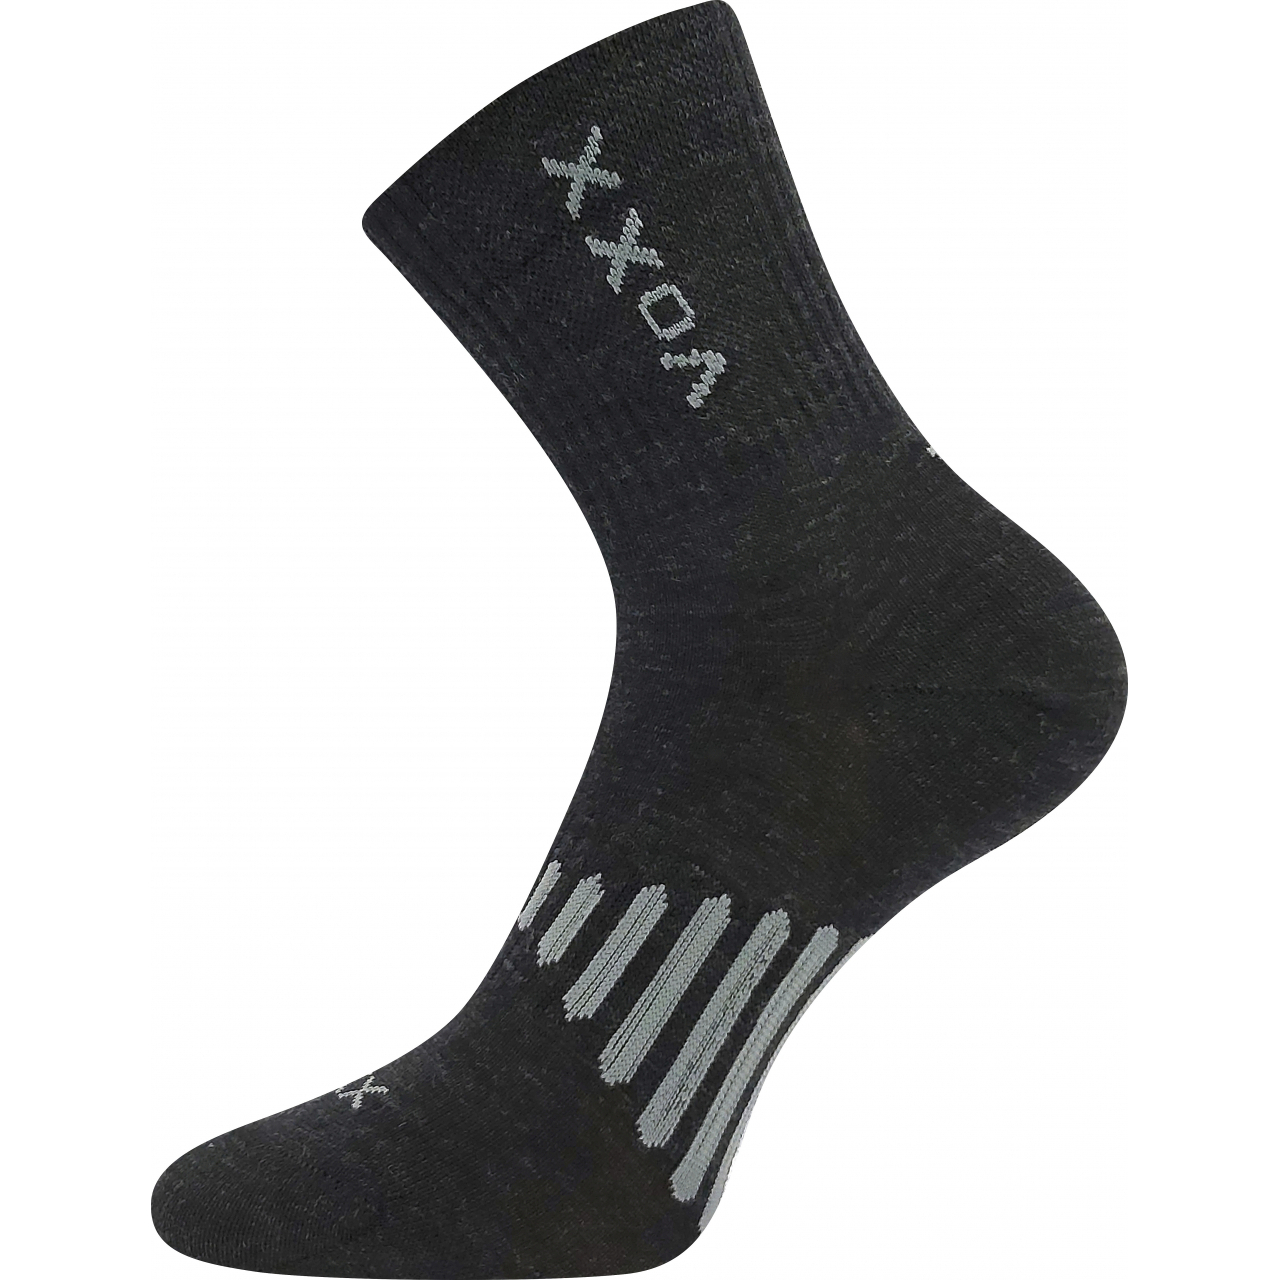 Ponožky unisex sportovní Voxx Powrix - tmavě šedé, 43-46